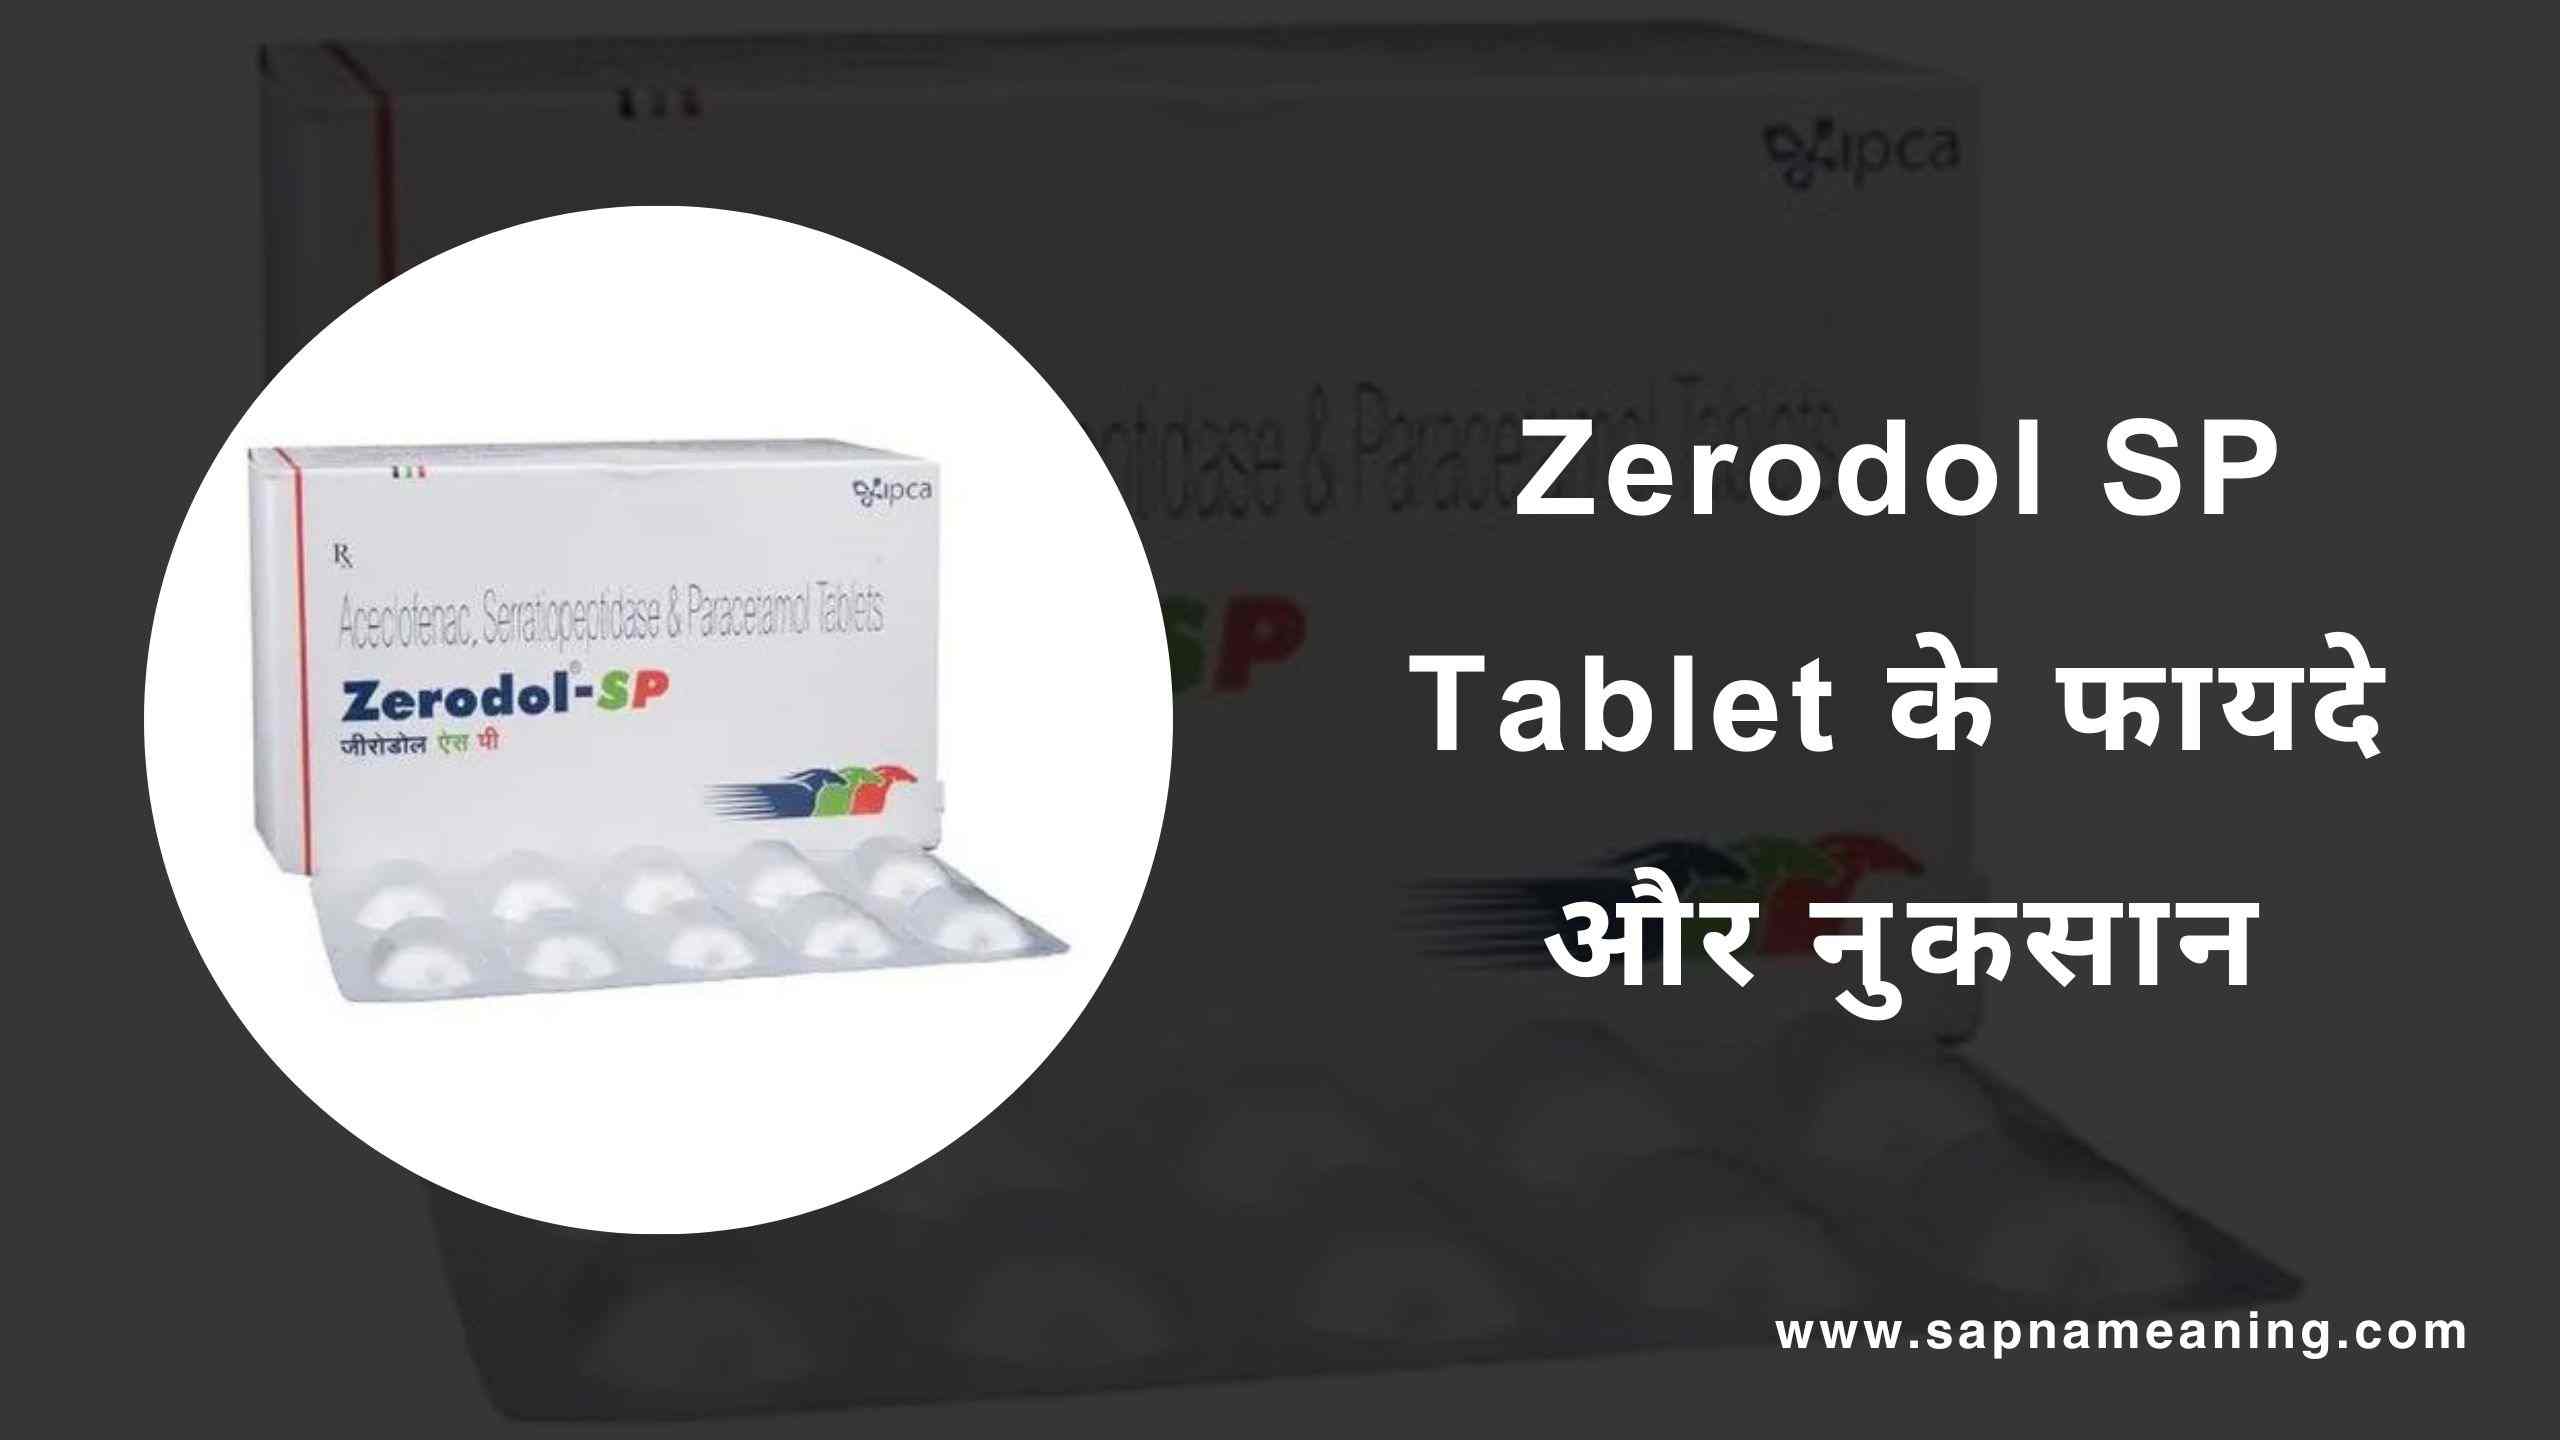 Zerodol SP Tablet uses in hindi